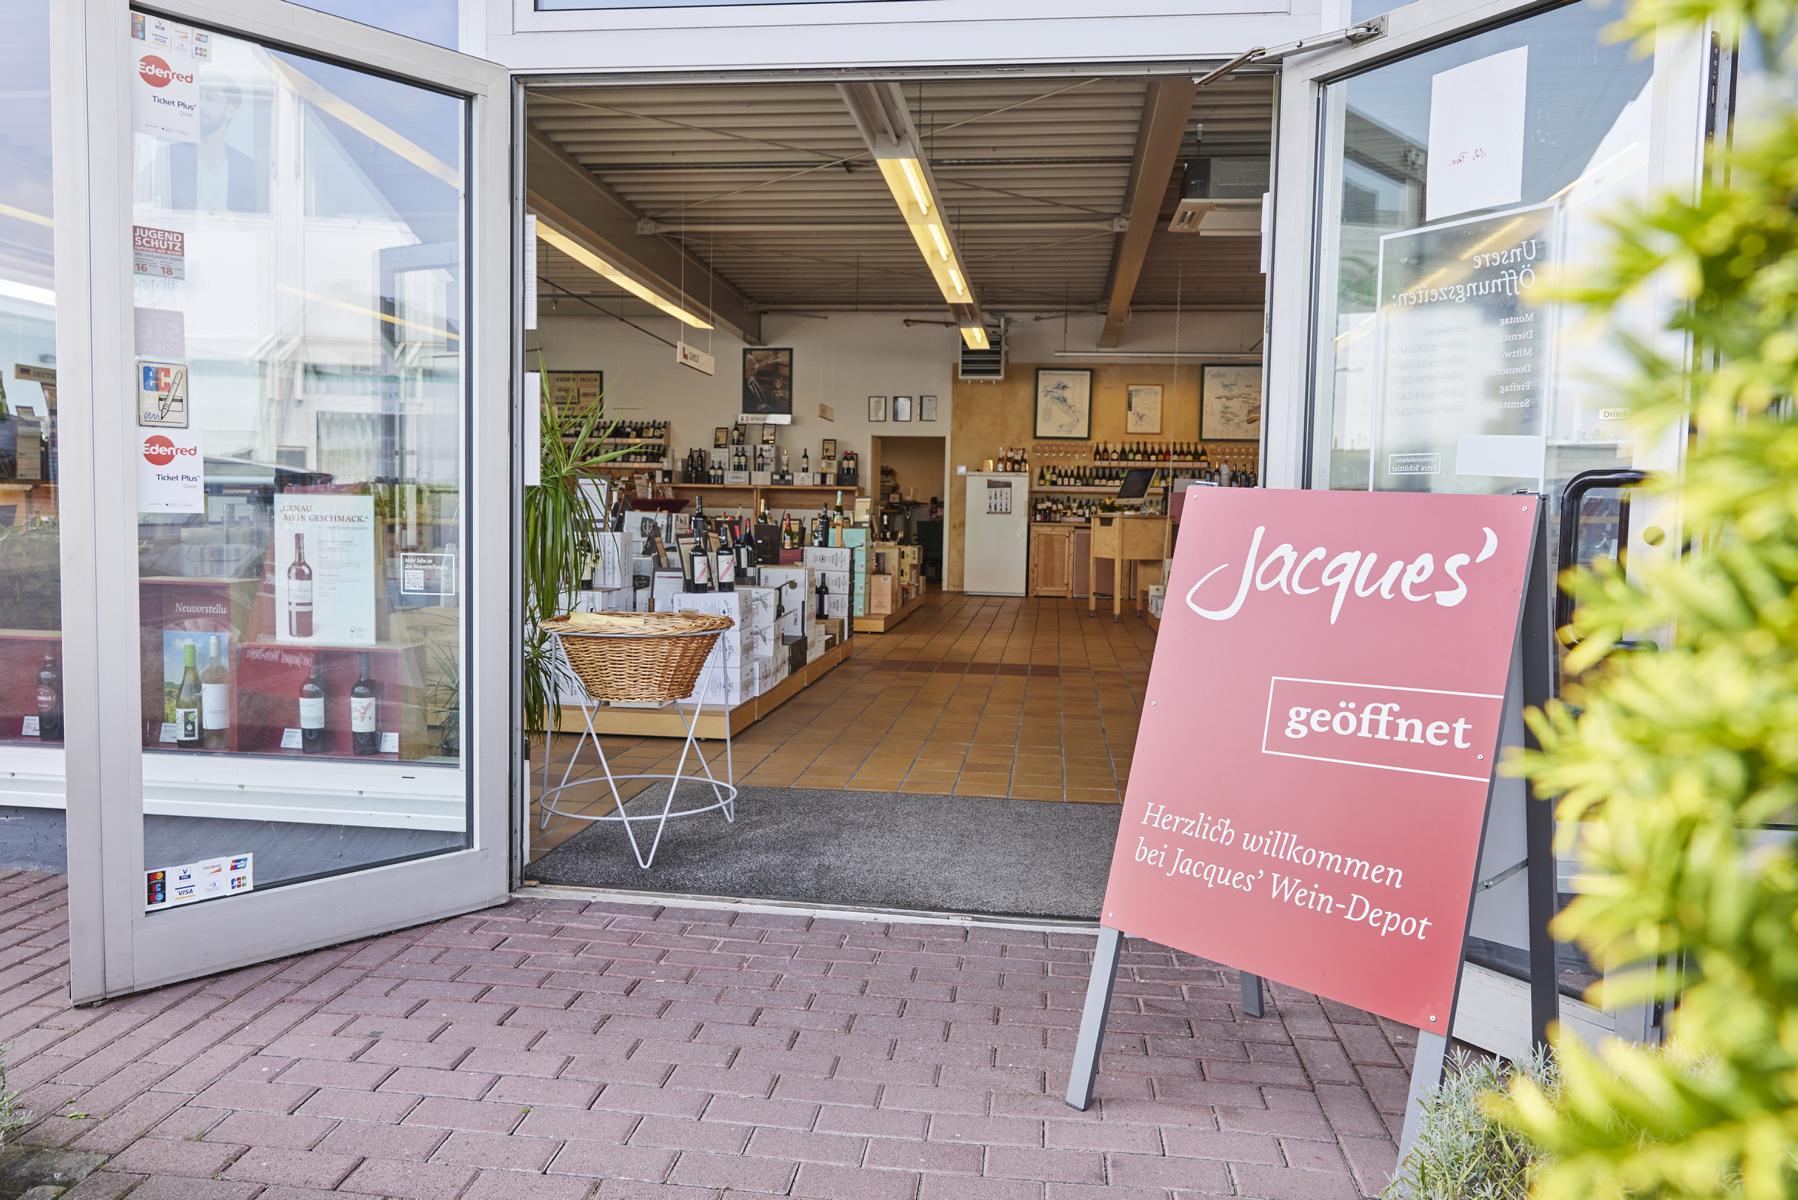 Jacques’ Wein-Depot Lohmar, Auelsweg 22 in Lohmar